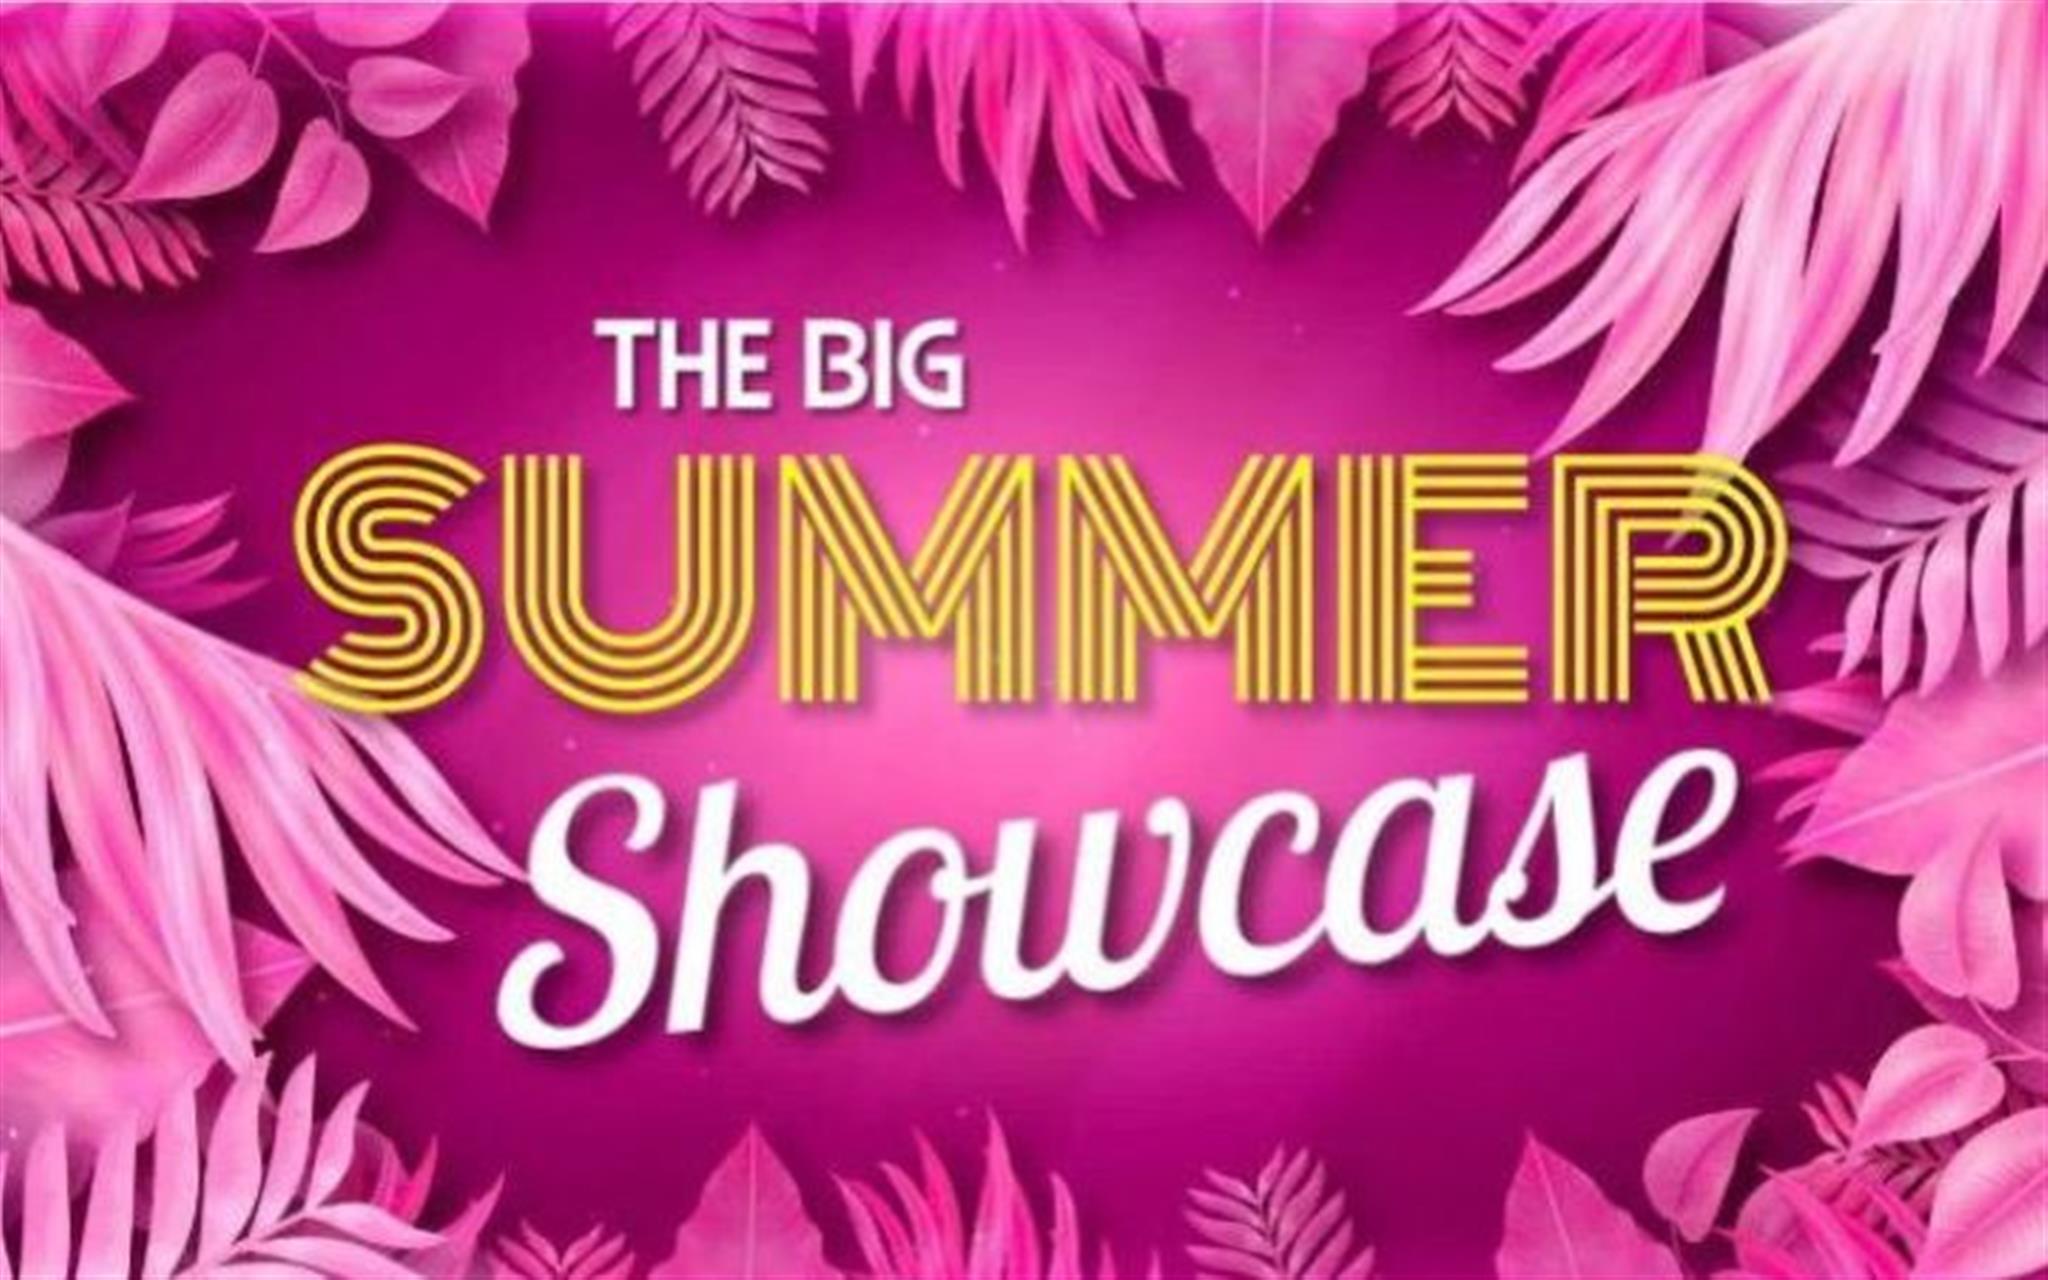 The Big Summer Showcase image